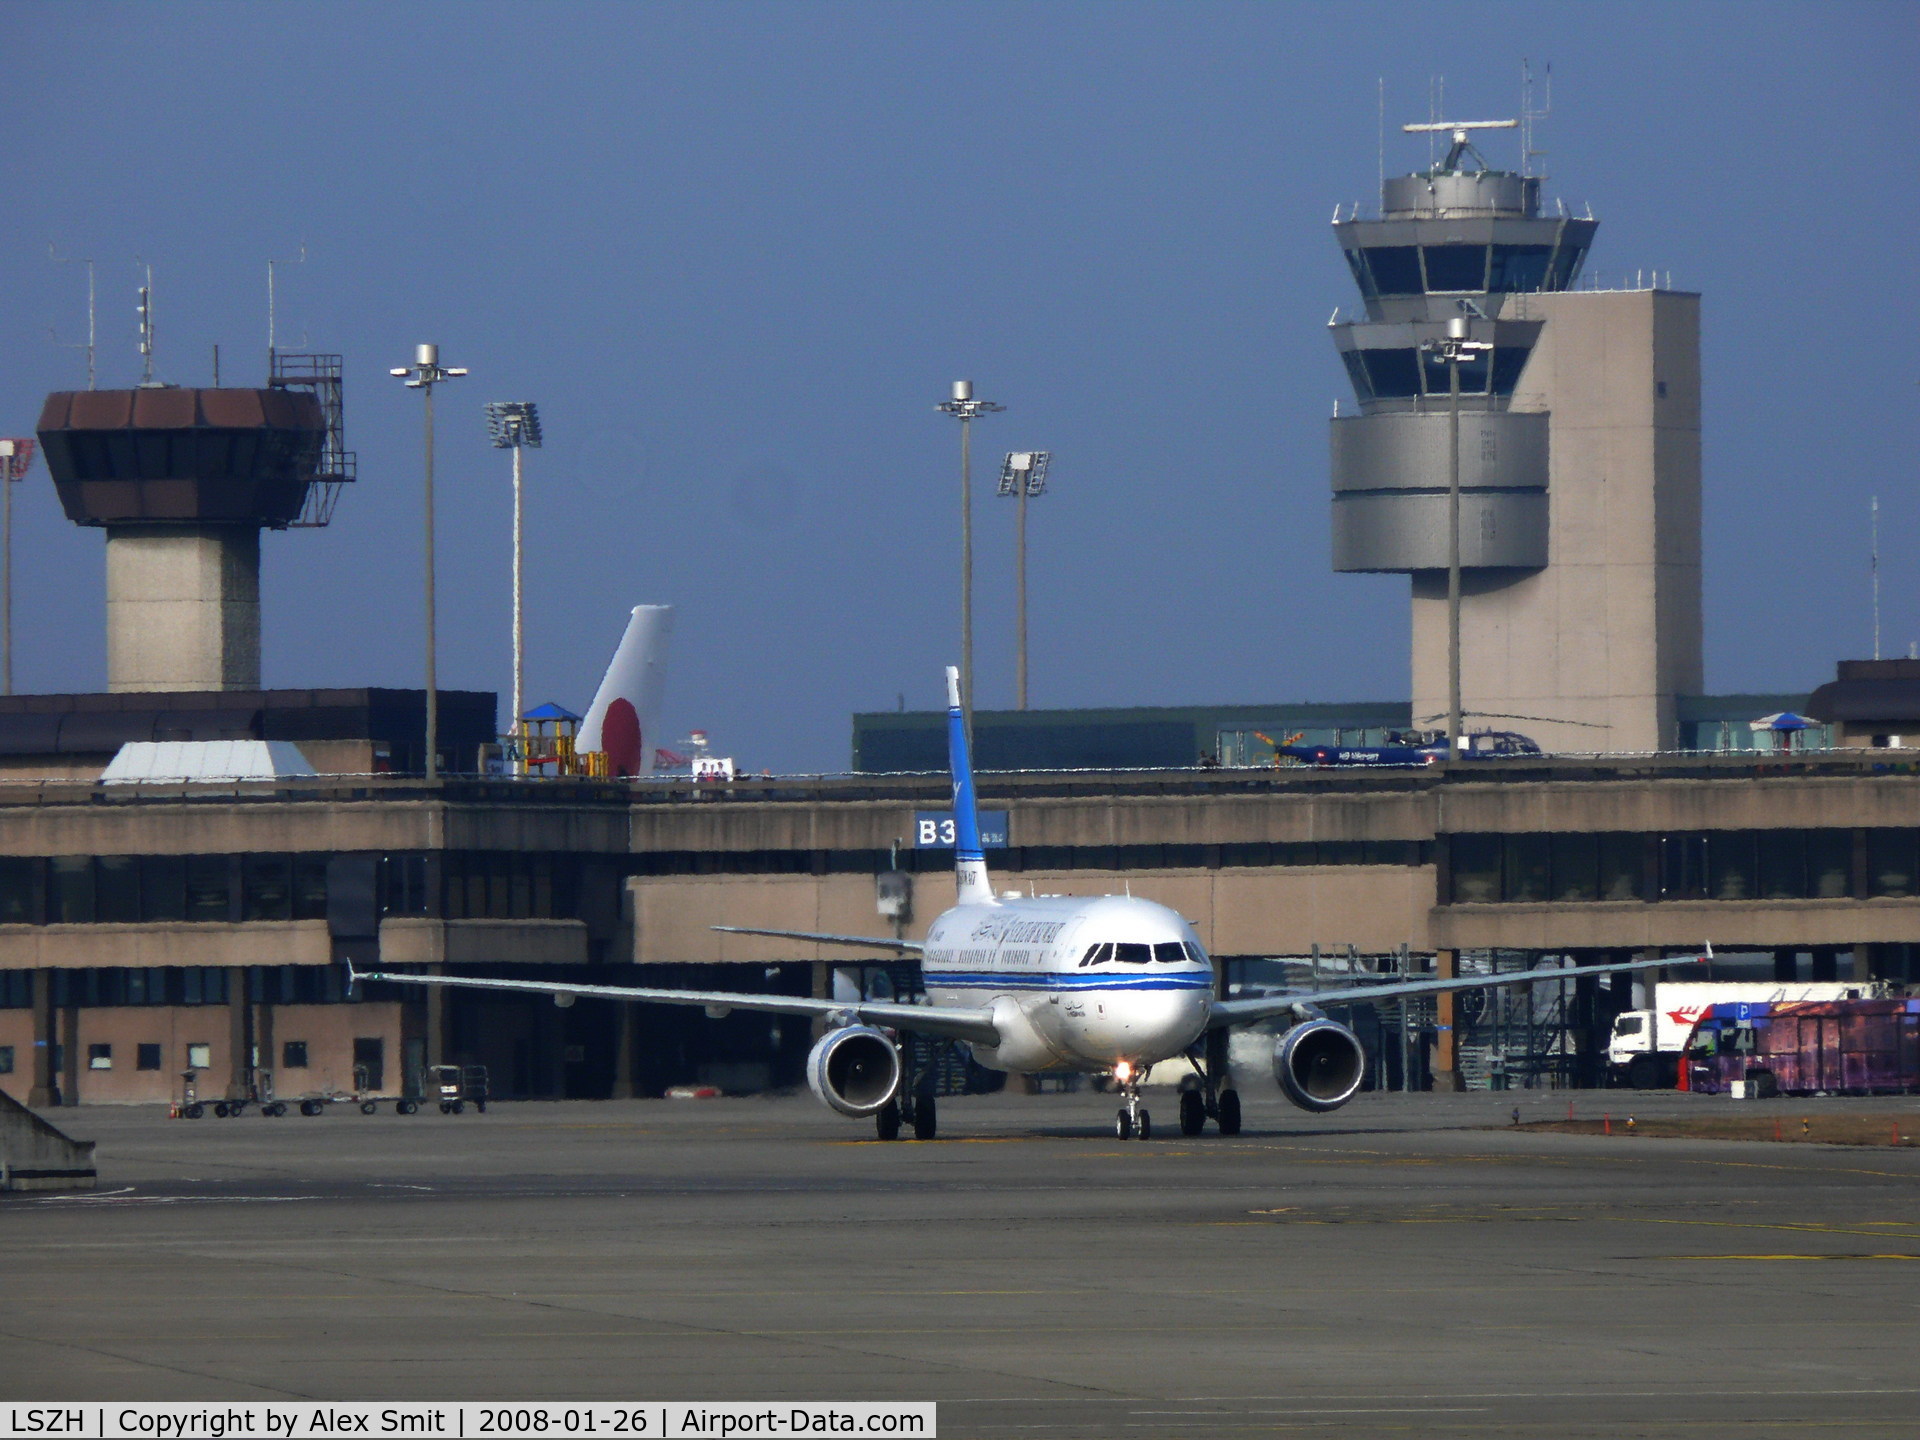 Zurich International Airport, Zurich Switzerland (LSZH) - Kuwait A320 taxiing to it's parking spot